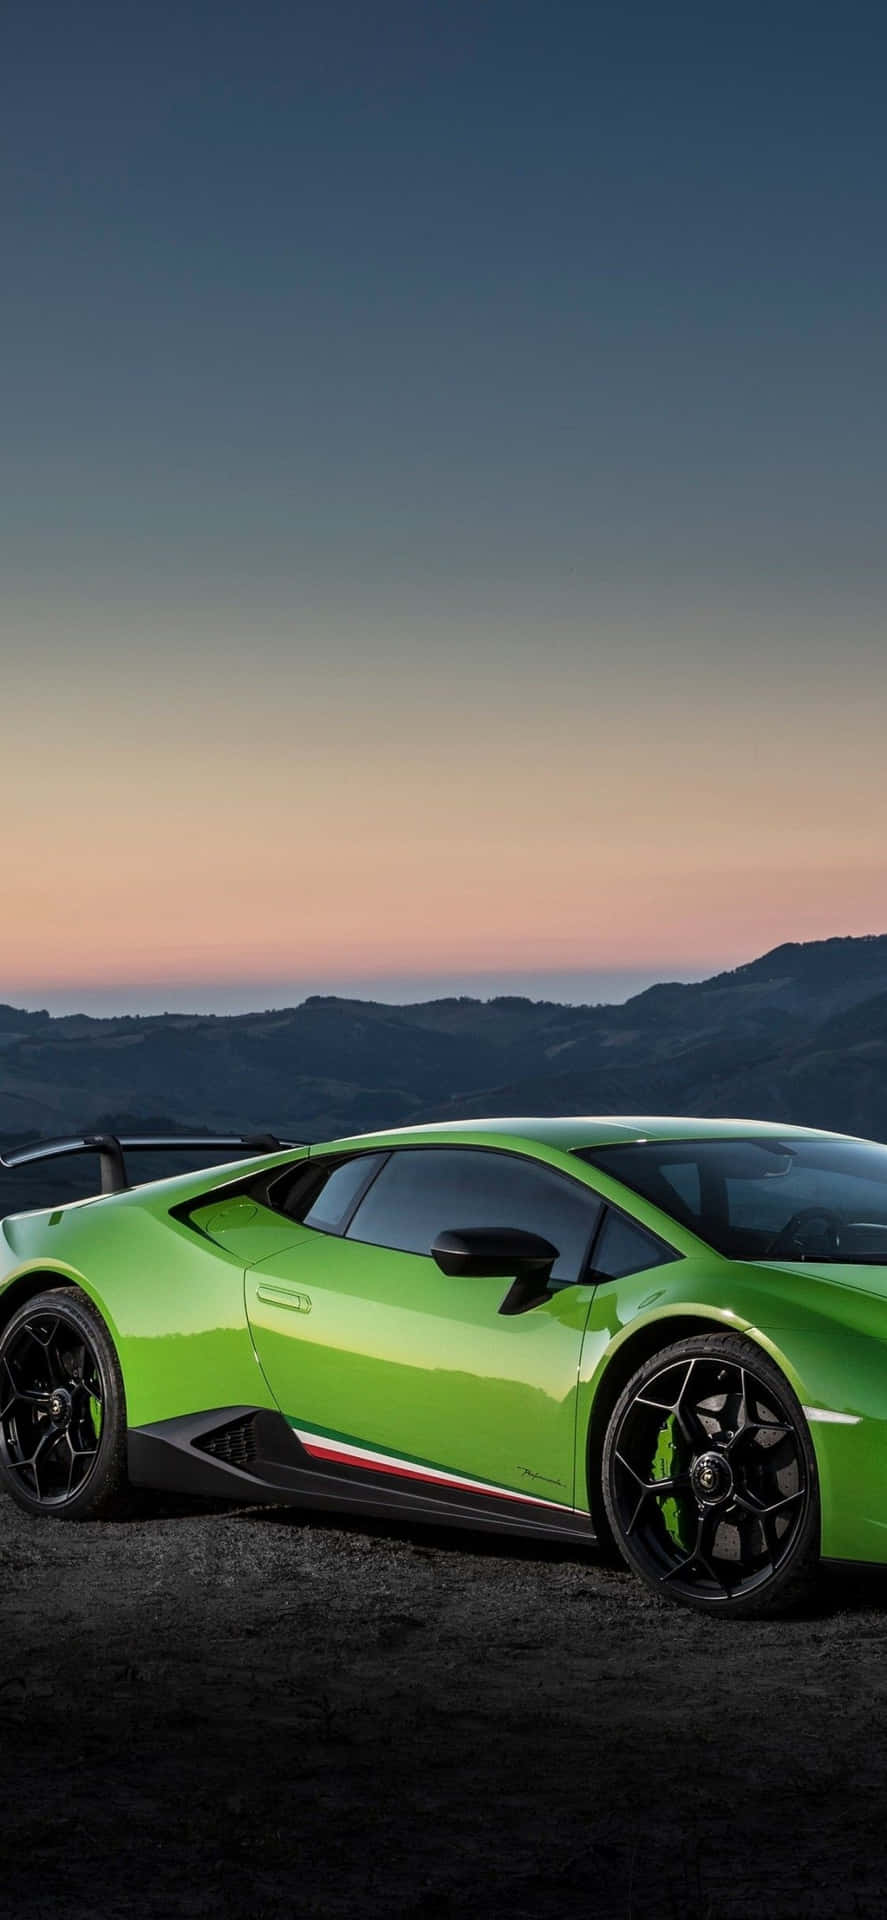 Genießensie Eine Fahrt In Einem Grünen Lamborghini Wallpaper